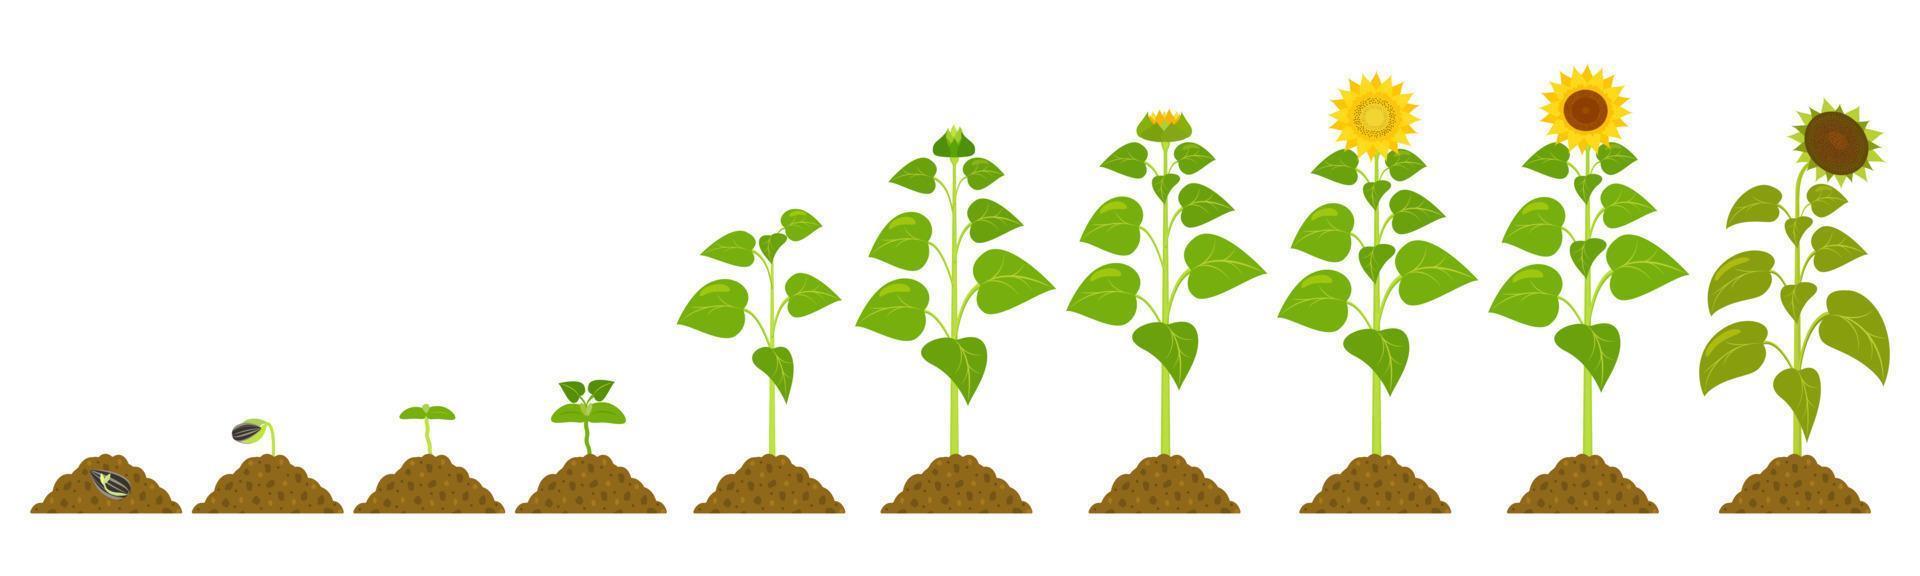 étapes de la germination du tournesol dans le chernozem. croissance des graines d'illustration botanique vectorielle. vecteur